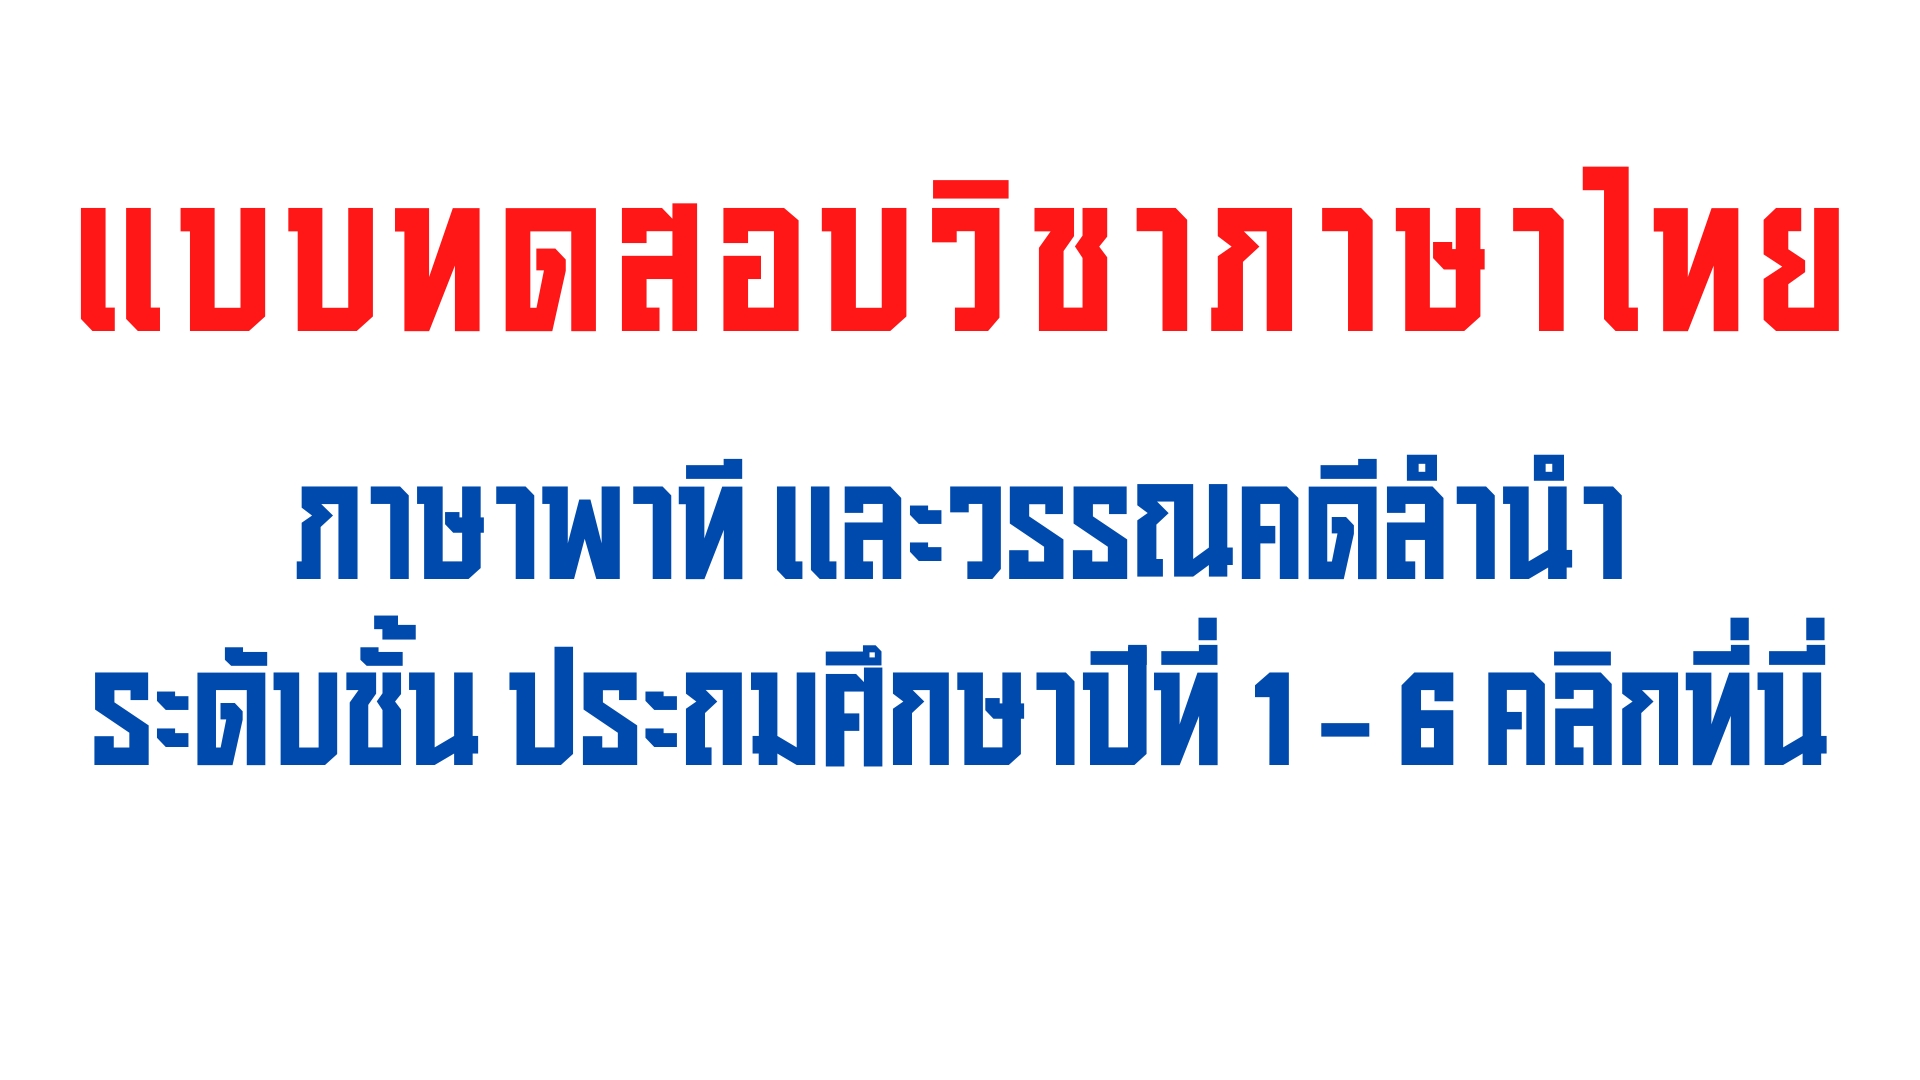 ใบงานคัดไทย วิชา ภาษาไทย ระดับชั้น ป.1-ป.6 ภาษาพาที และวรรณคดีลำนำ ดาวน์โหลดที่นี่